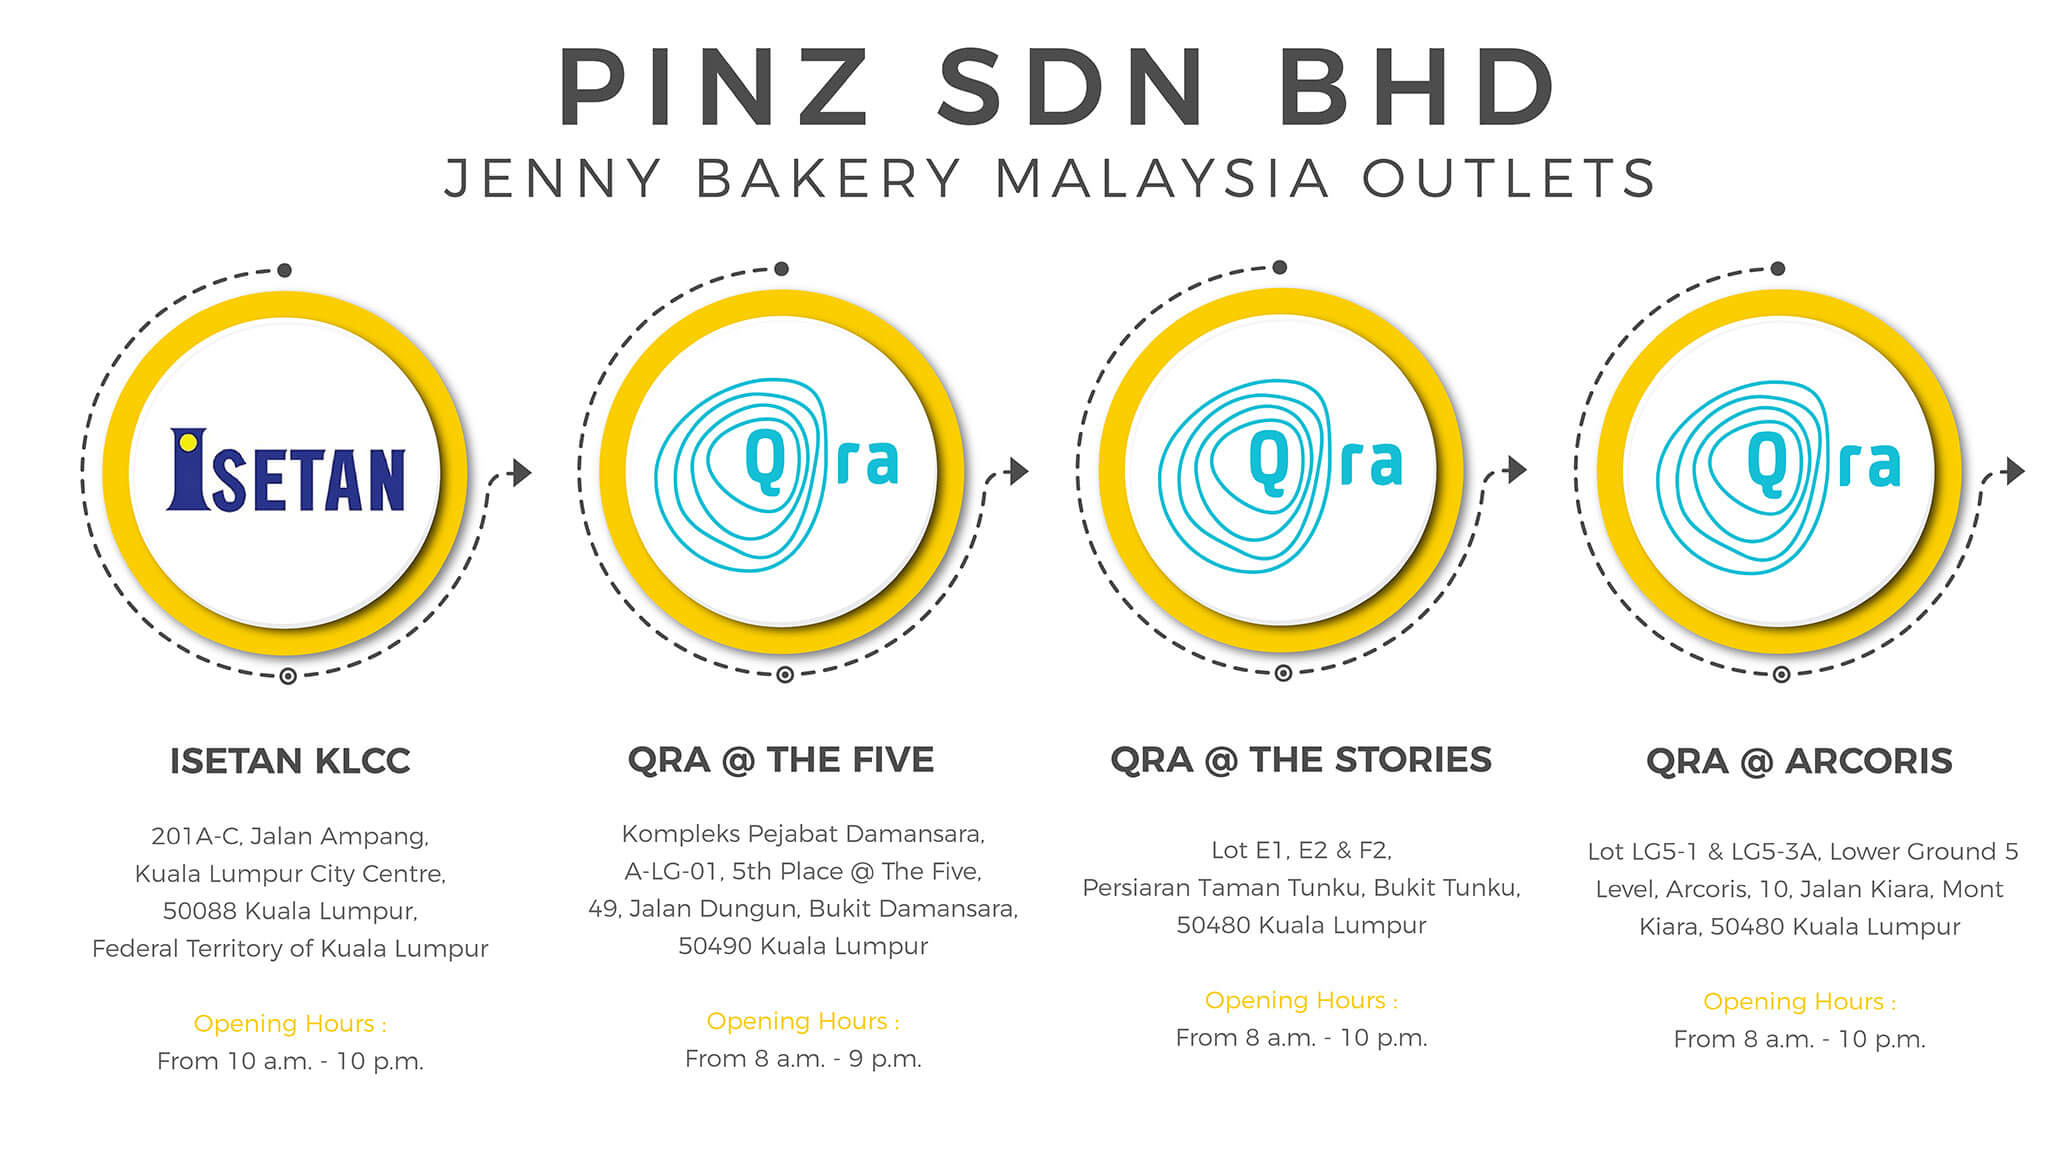 Jenny Bakery Malaysia Outlets